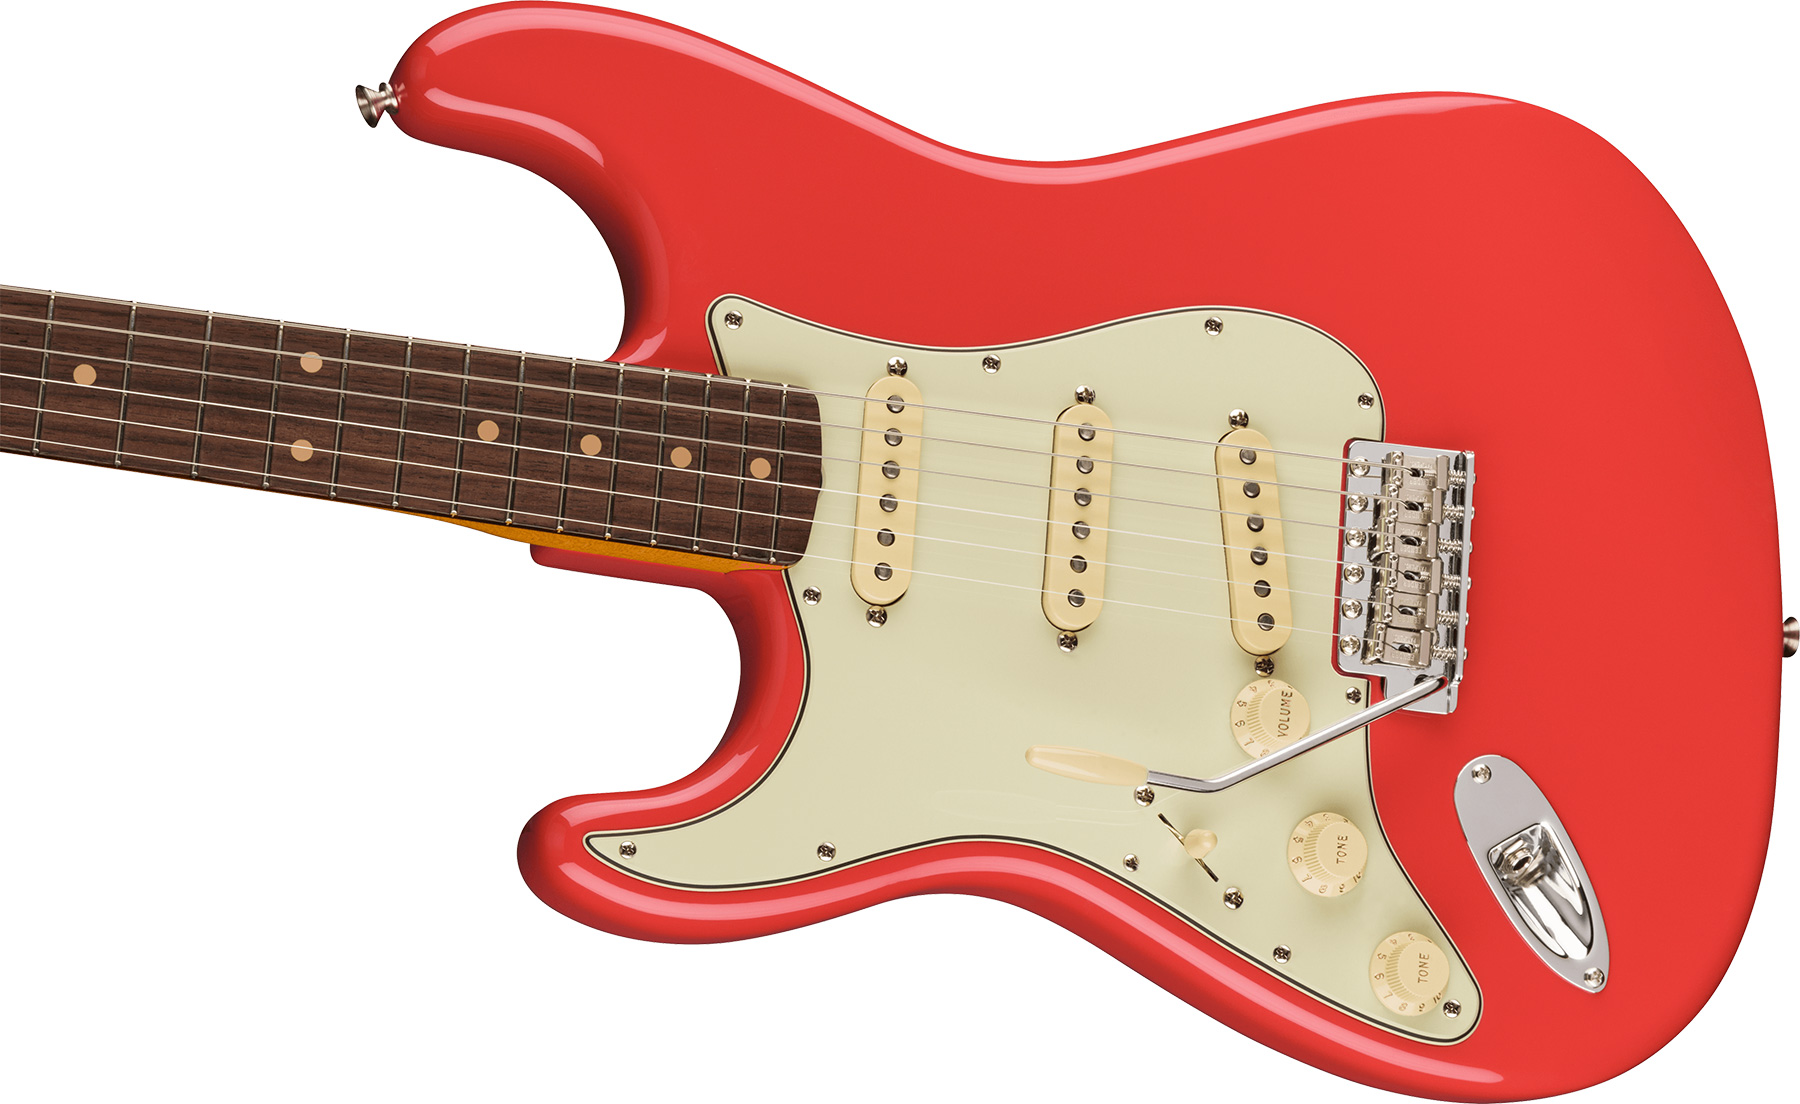 Fender Strat 1961 American Vintage Ii Lh Gaucher Usa 3s Trem Rw - Fiesta Red - Linkshandige elektrische gitaar - Variation 2